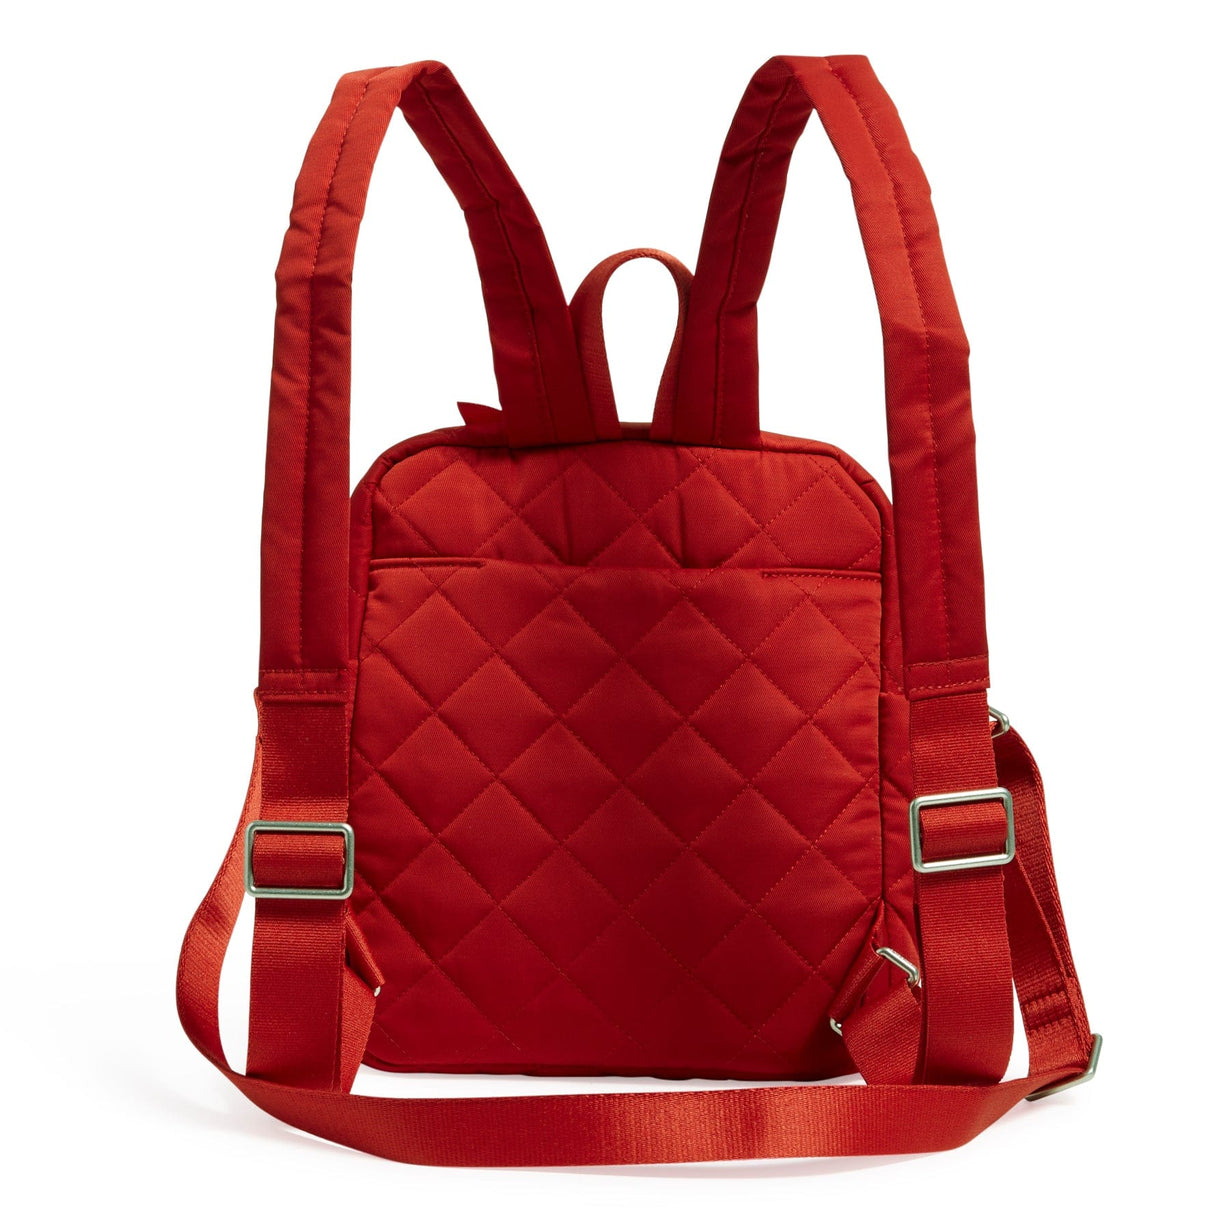 Polyester Shoulder Bag Rose Red Quilted Pattern